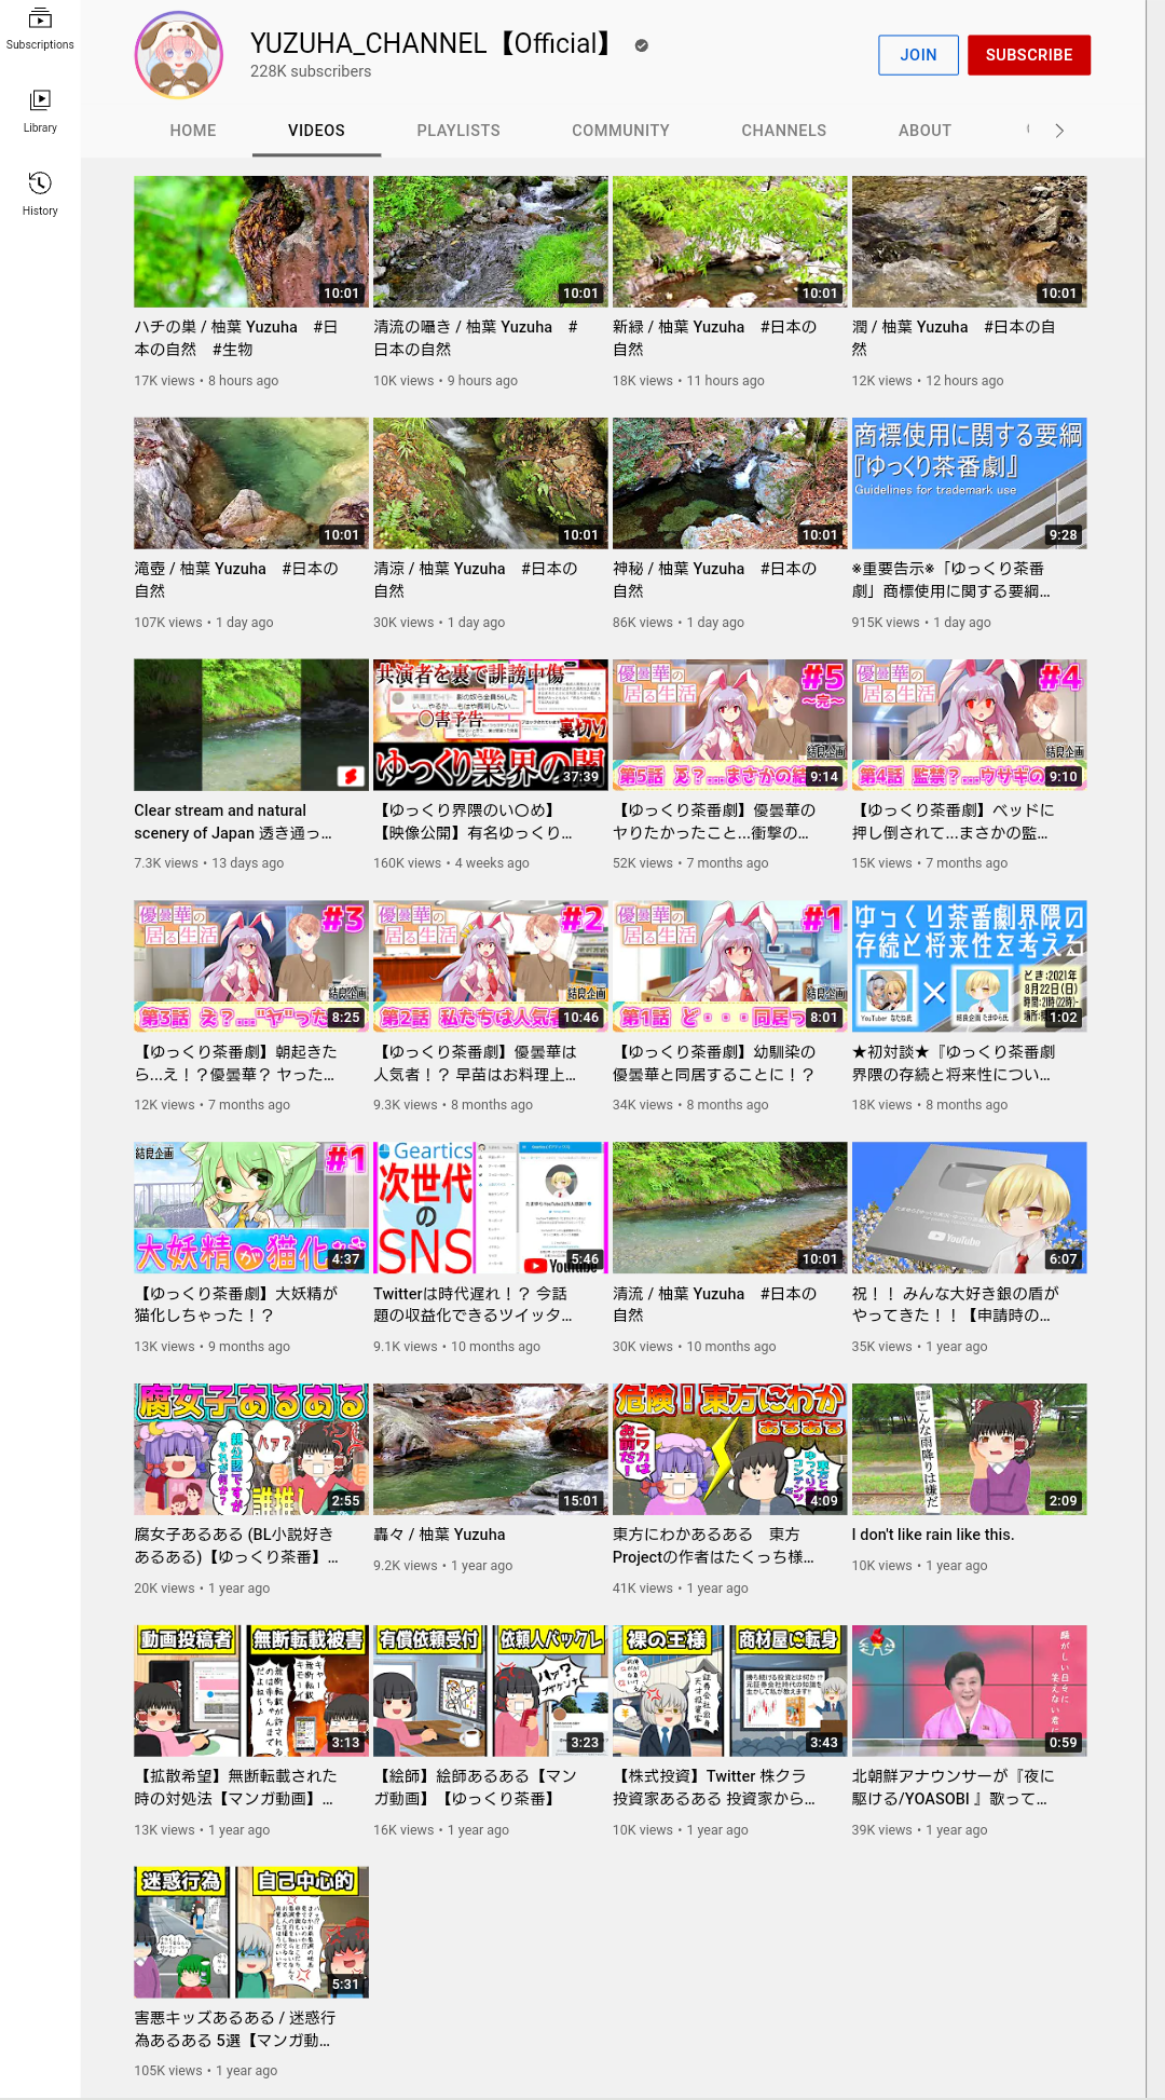 ゆっくり茶番劇柚葉さん、自身のチャンネルのゆっくり動画を全て非公開に\n_1